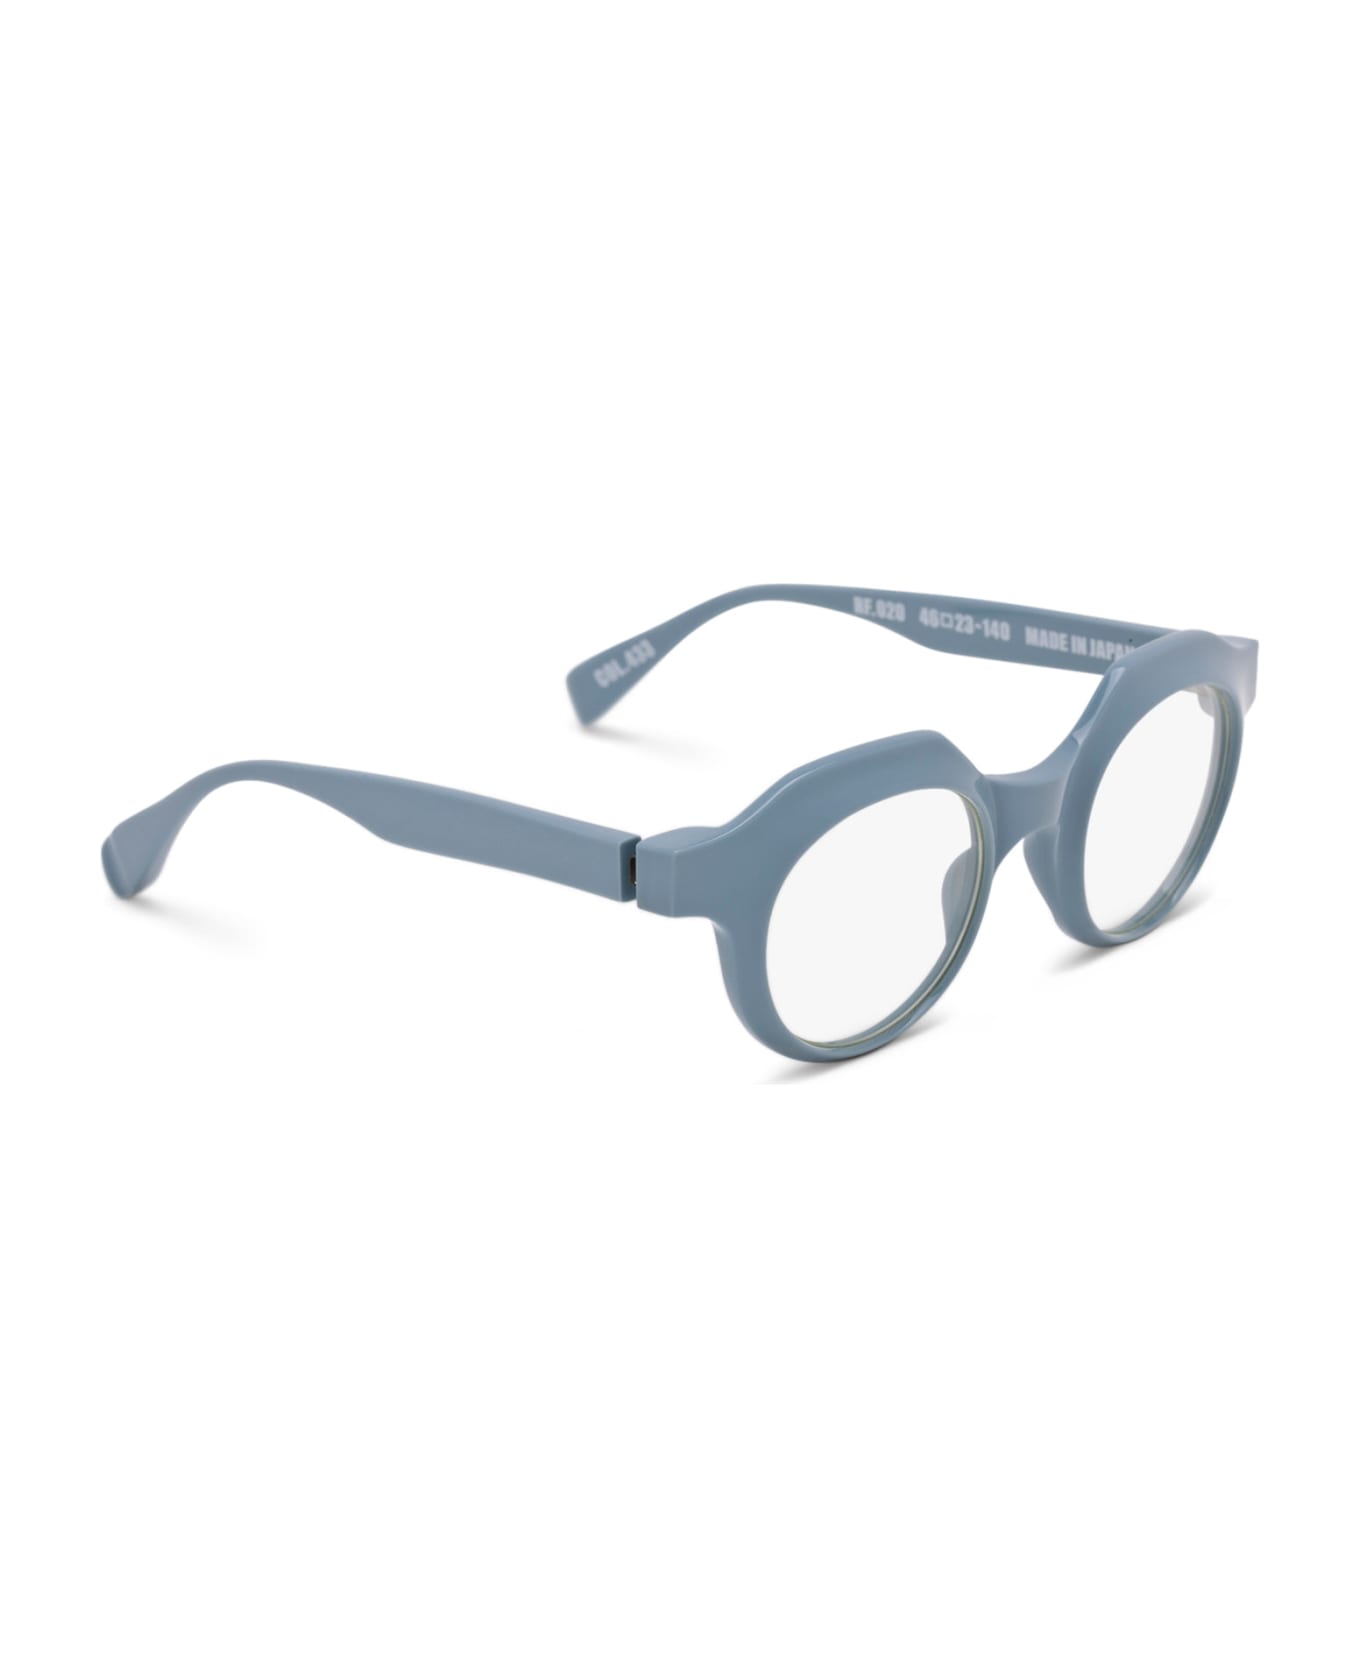 FACTORY900 Rf 020-433 Glasses - light blue